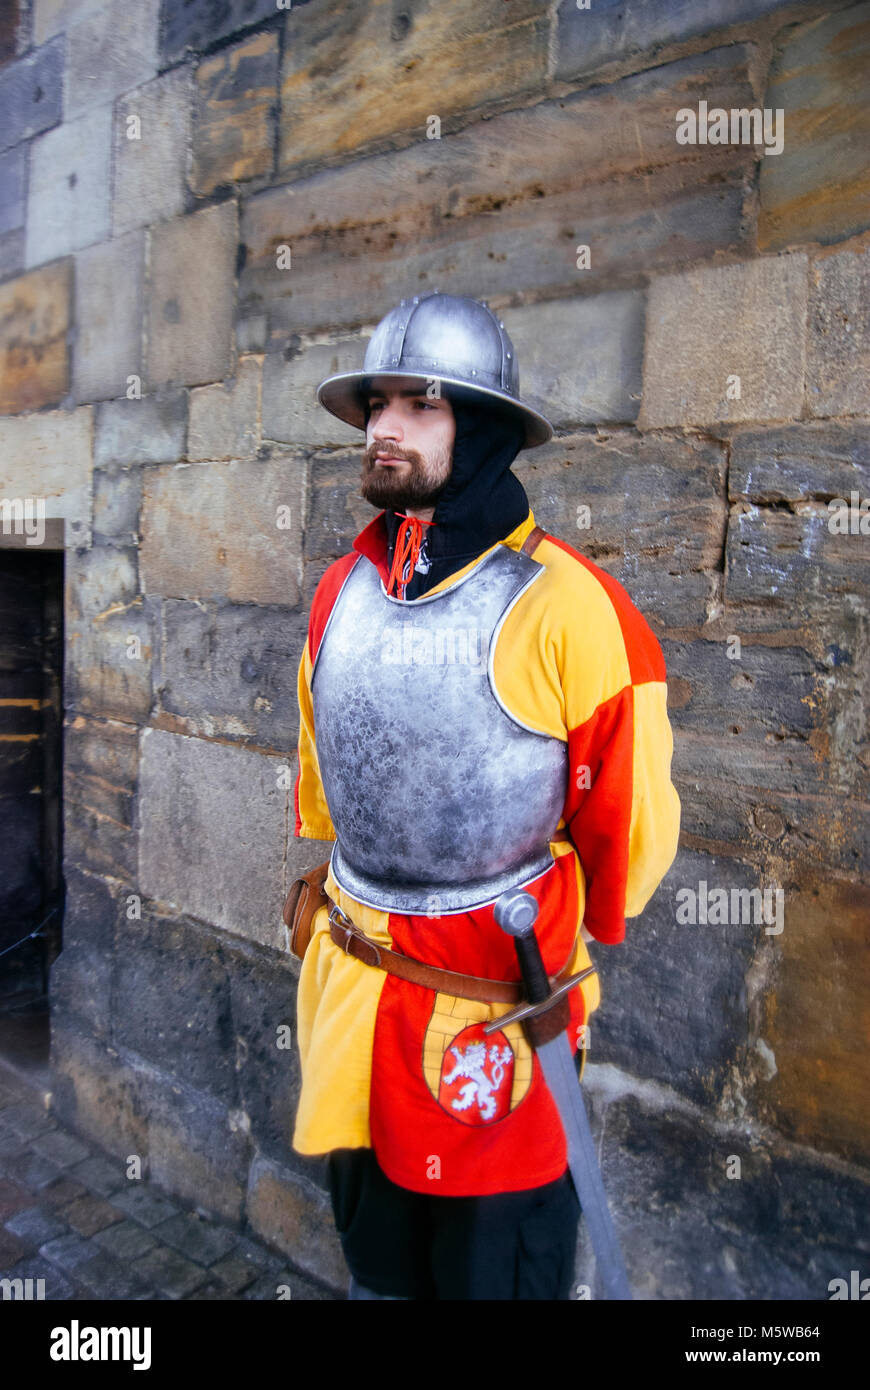 Un garde, habillé comme un chevalier médiéval (rouge et jaune uniforme de couleur représente le drapeau de Prague) à la Tour Poudrière de Prague, en République tchèque. Banque D'Images